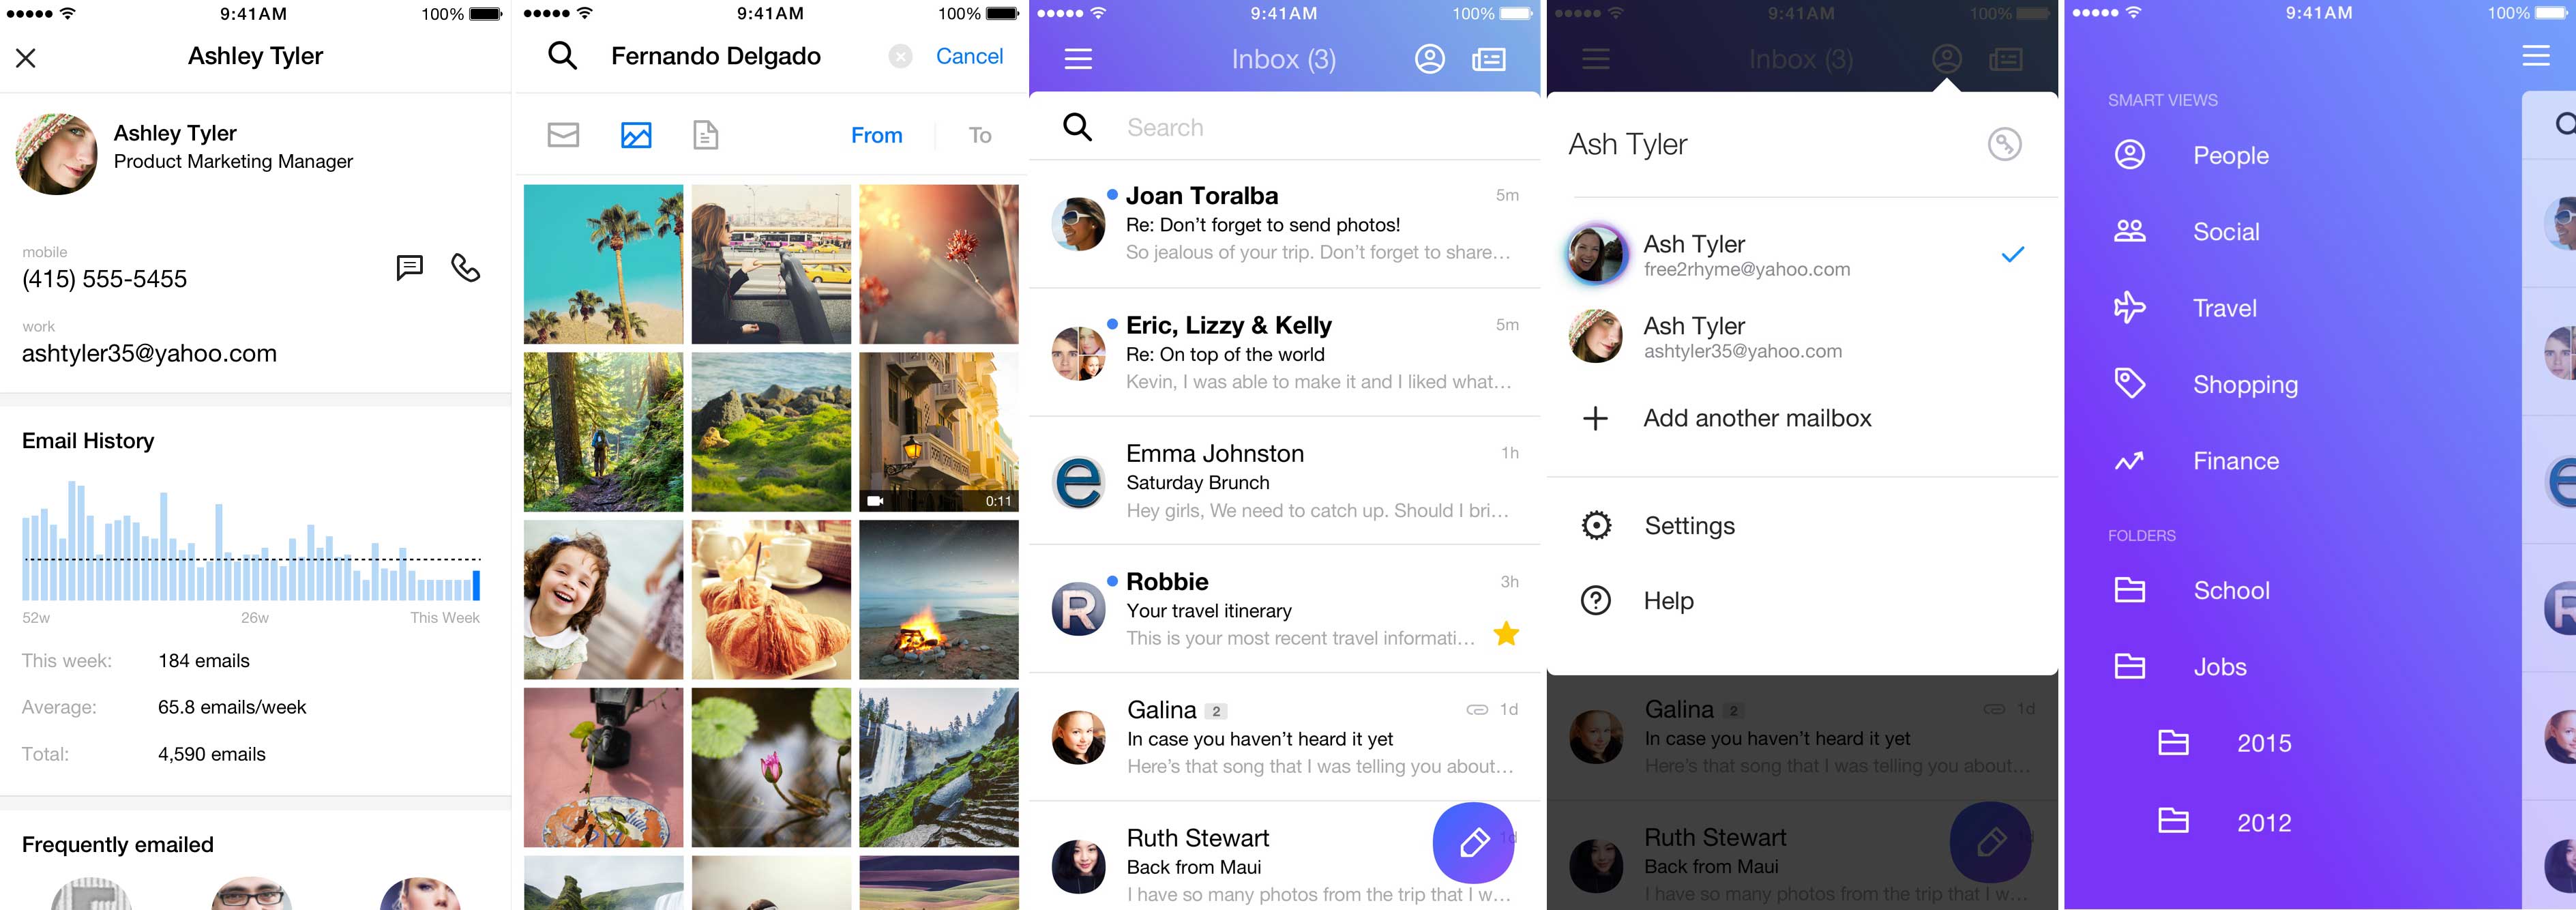 Yahoo Mail's iOS app